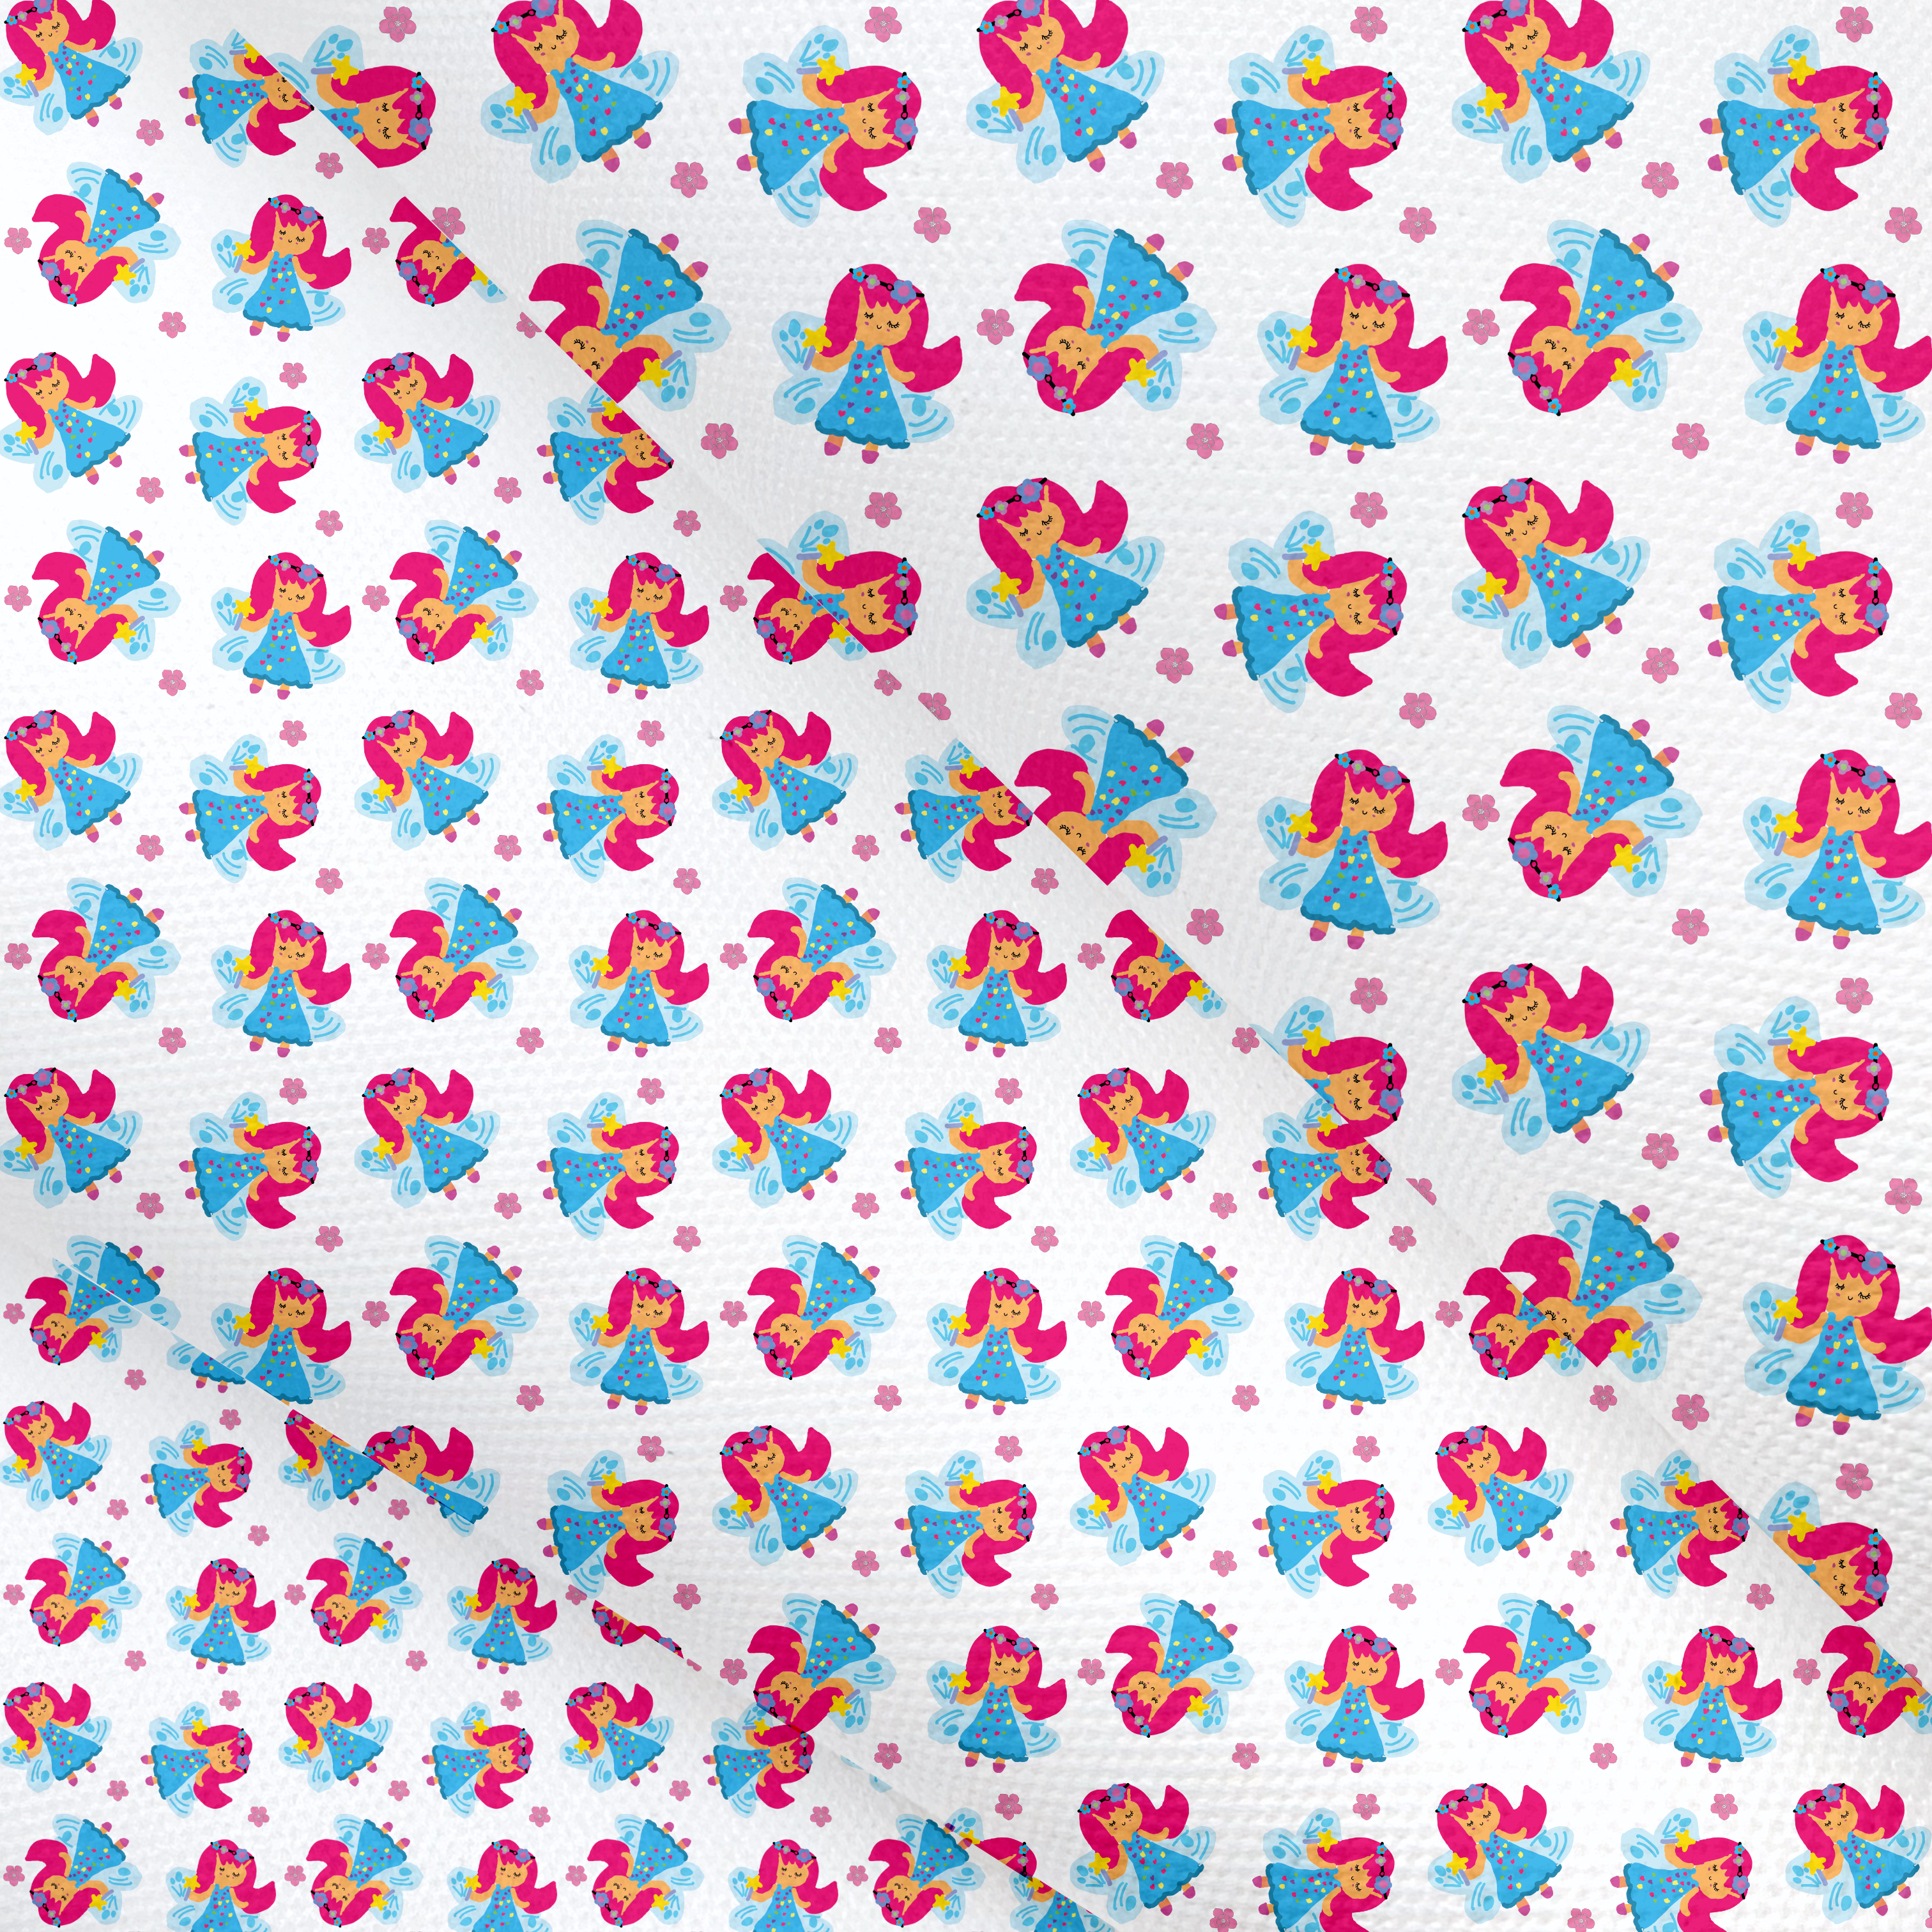 Little Ariana Fairy ‘Tiny Designer’ Canvas Lux Premium Printed Fabric- 3 Sizes